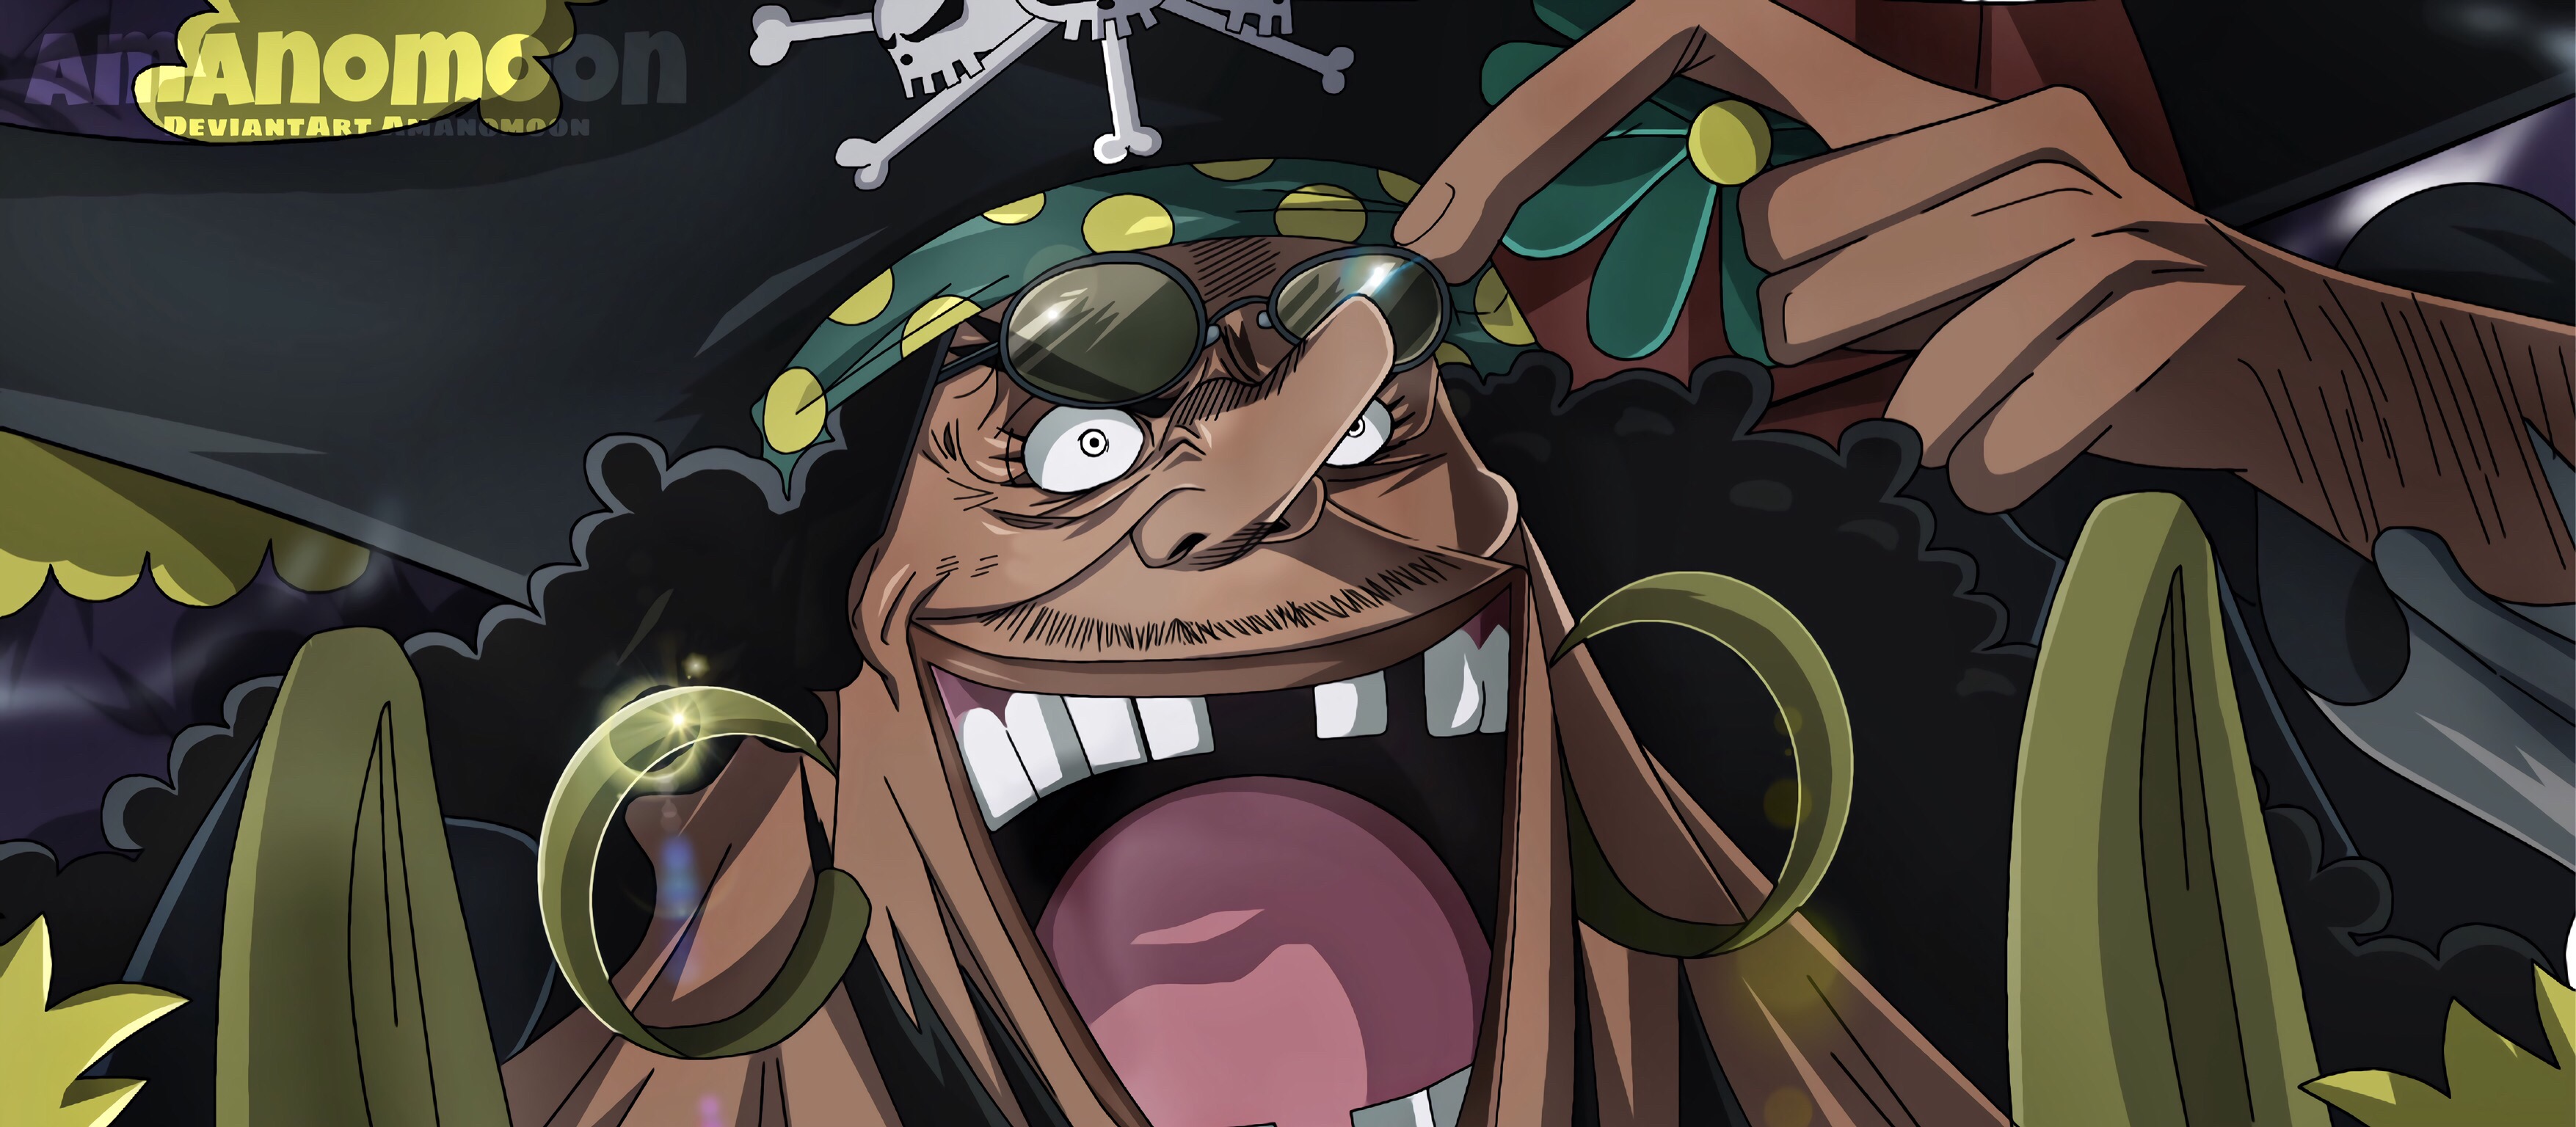 Descarga gratuita de fondo de pantalla para móvil de Animado, One Piece, Marshall D Enseñar.